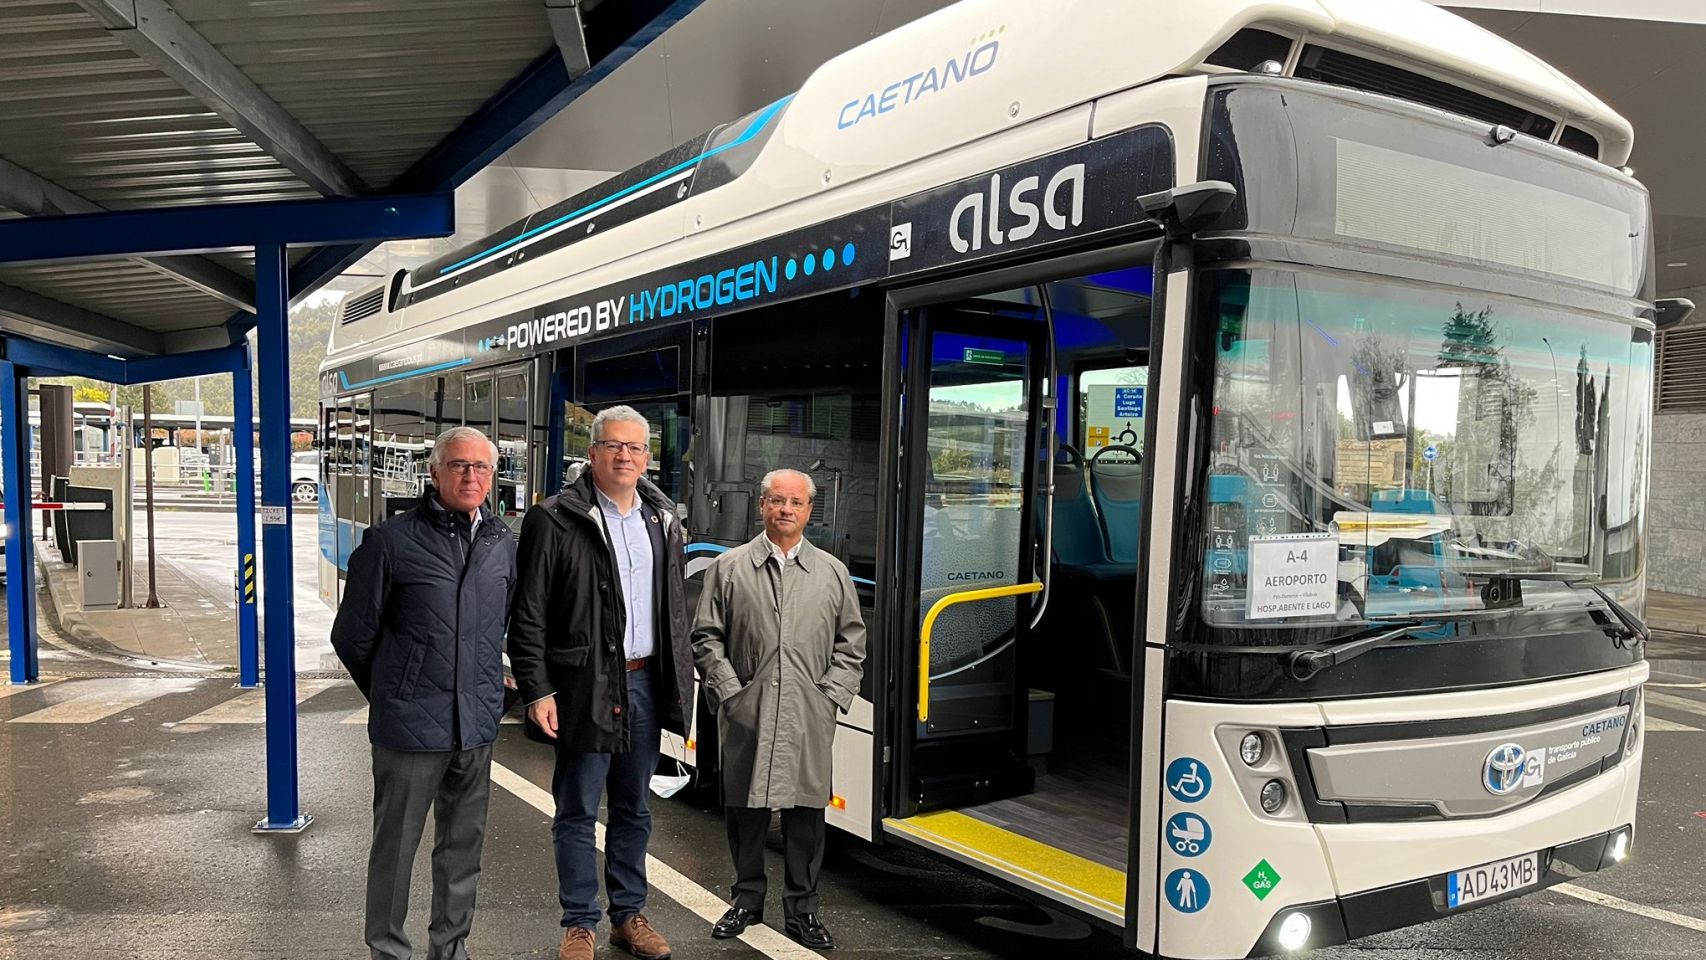 El autobús de hidrógeno renovable que se incorporará al transporte público interurbano de Galicia.